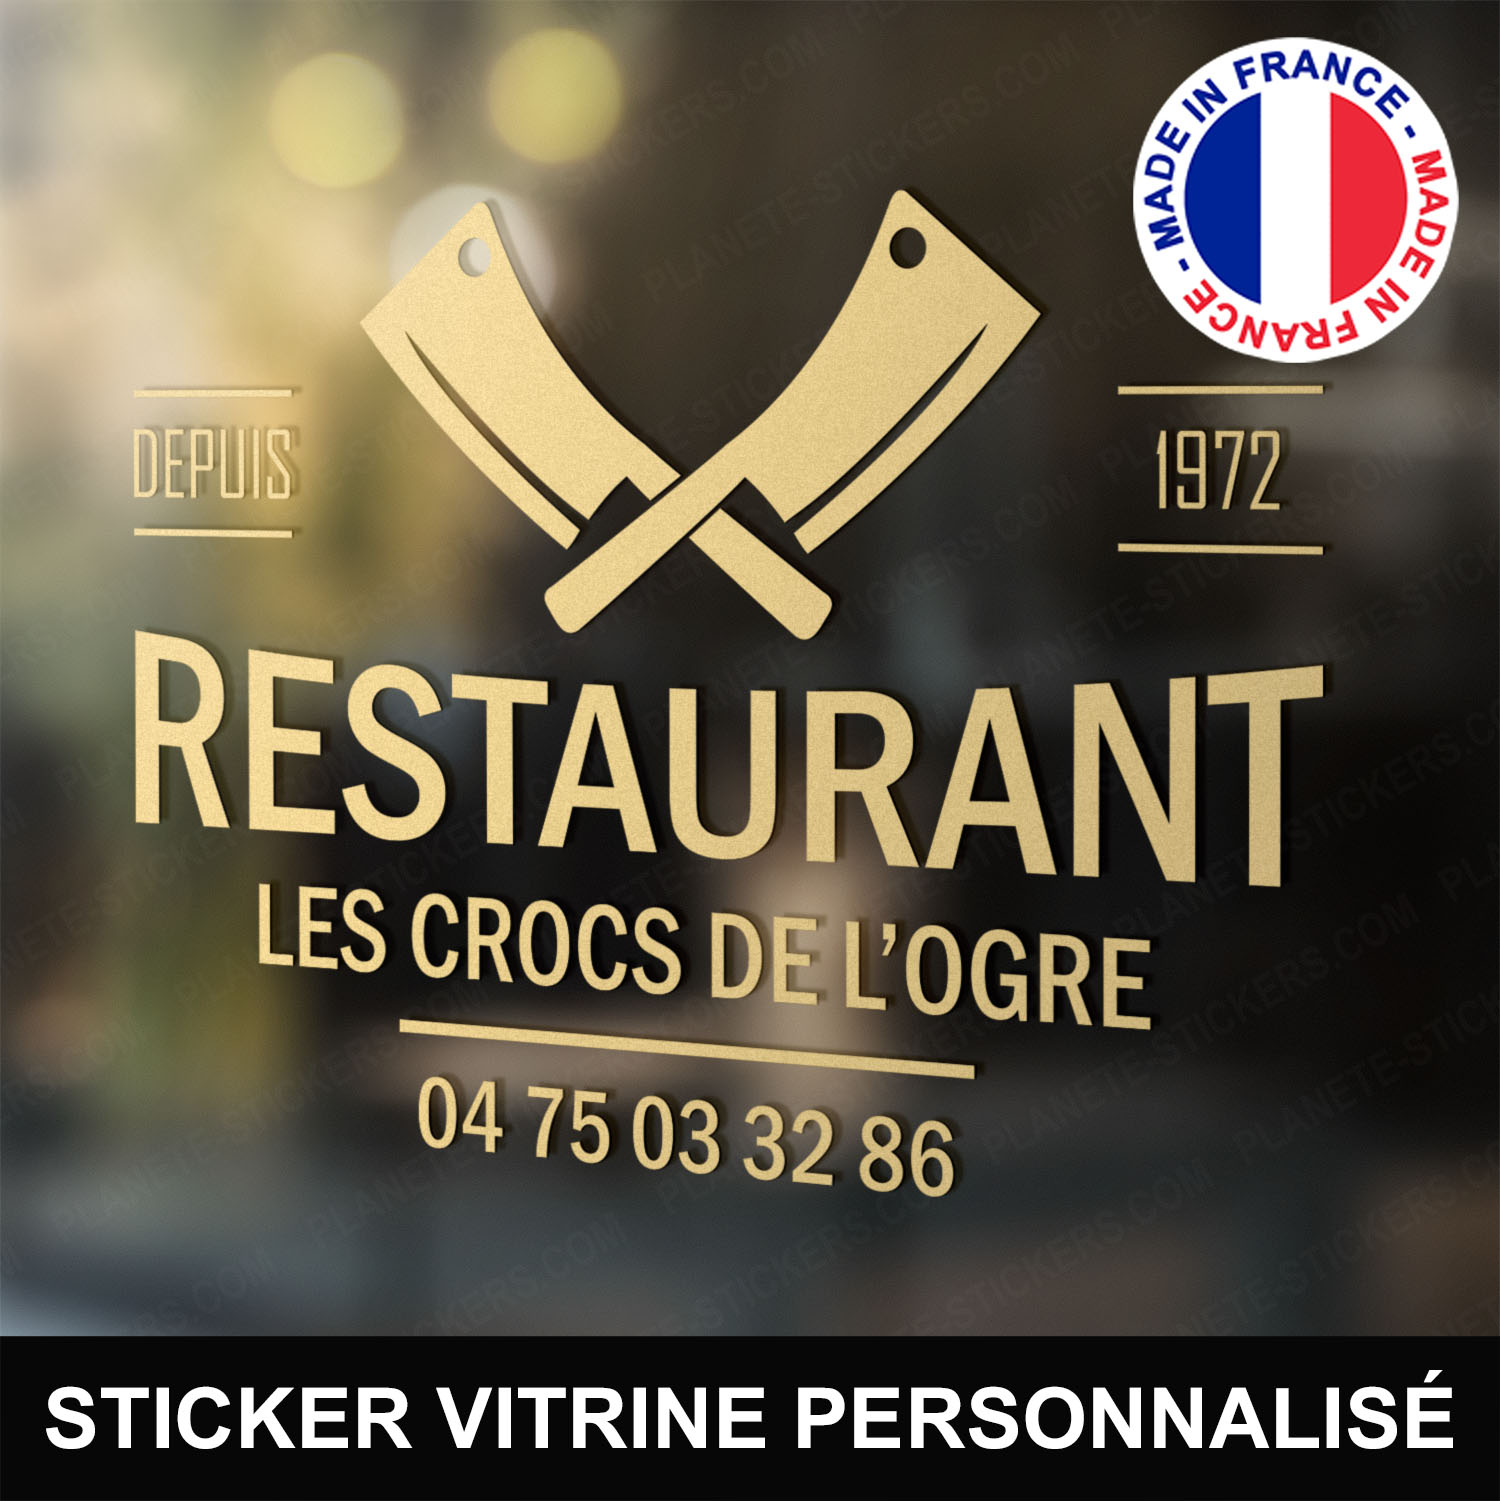 ref12restaurantvitrine-stickers-restaurant-vitrine-restaurant-sticker-personnalisé-autocollant-pro-restaurateur-vitre-resto-professionnel-logo-hachoirs